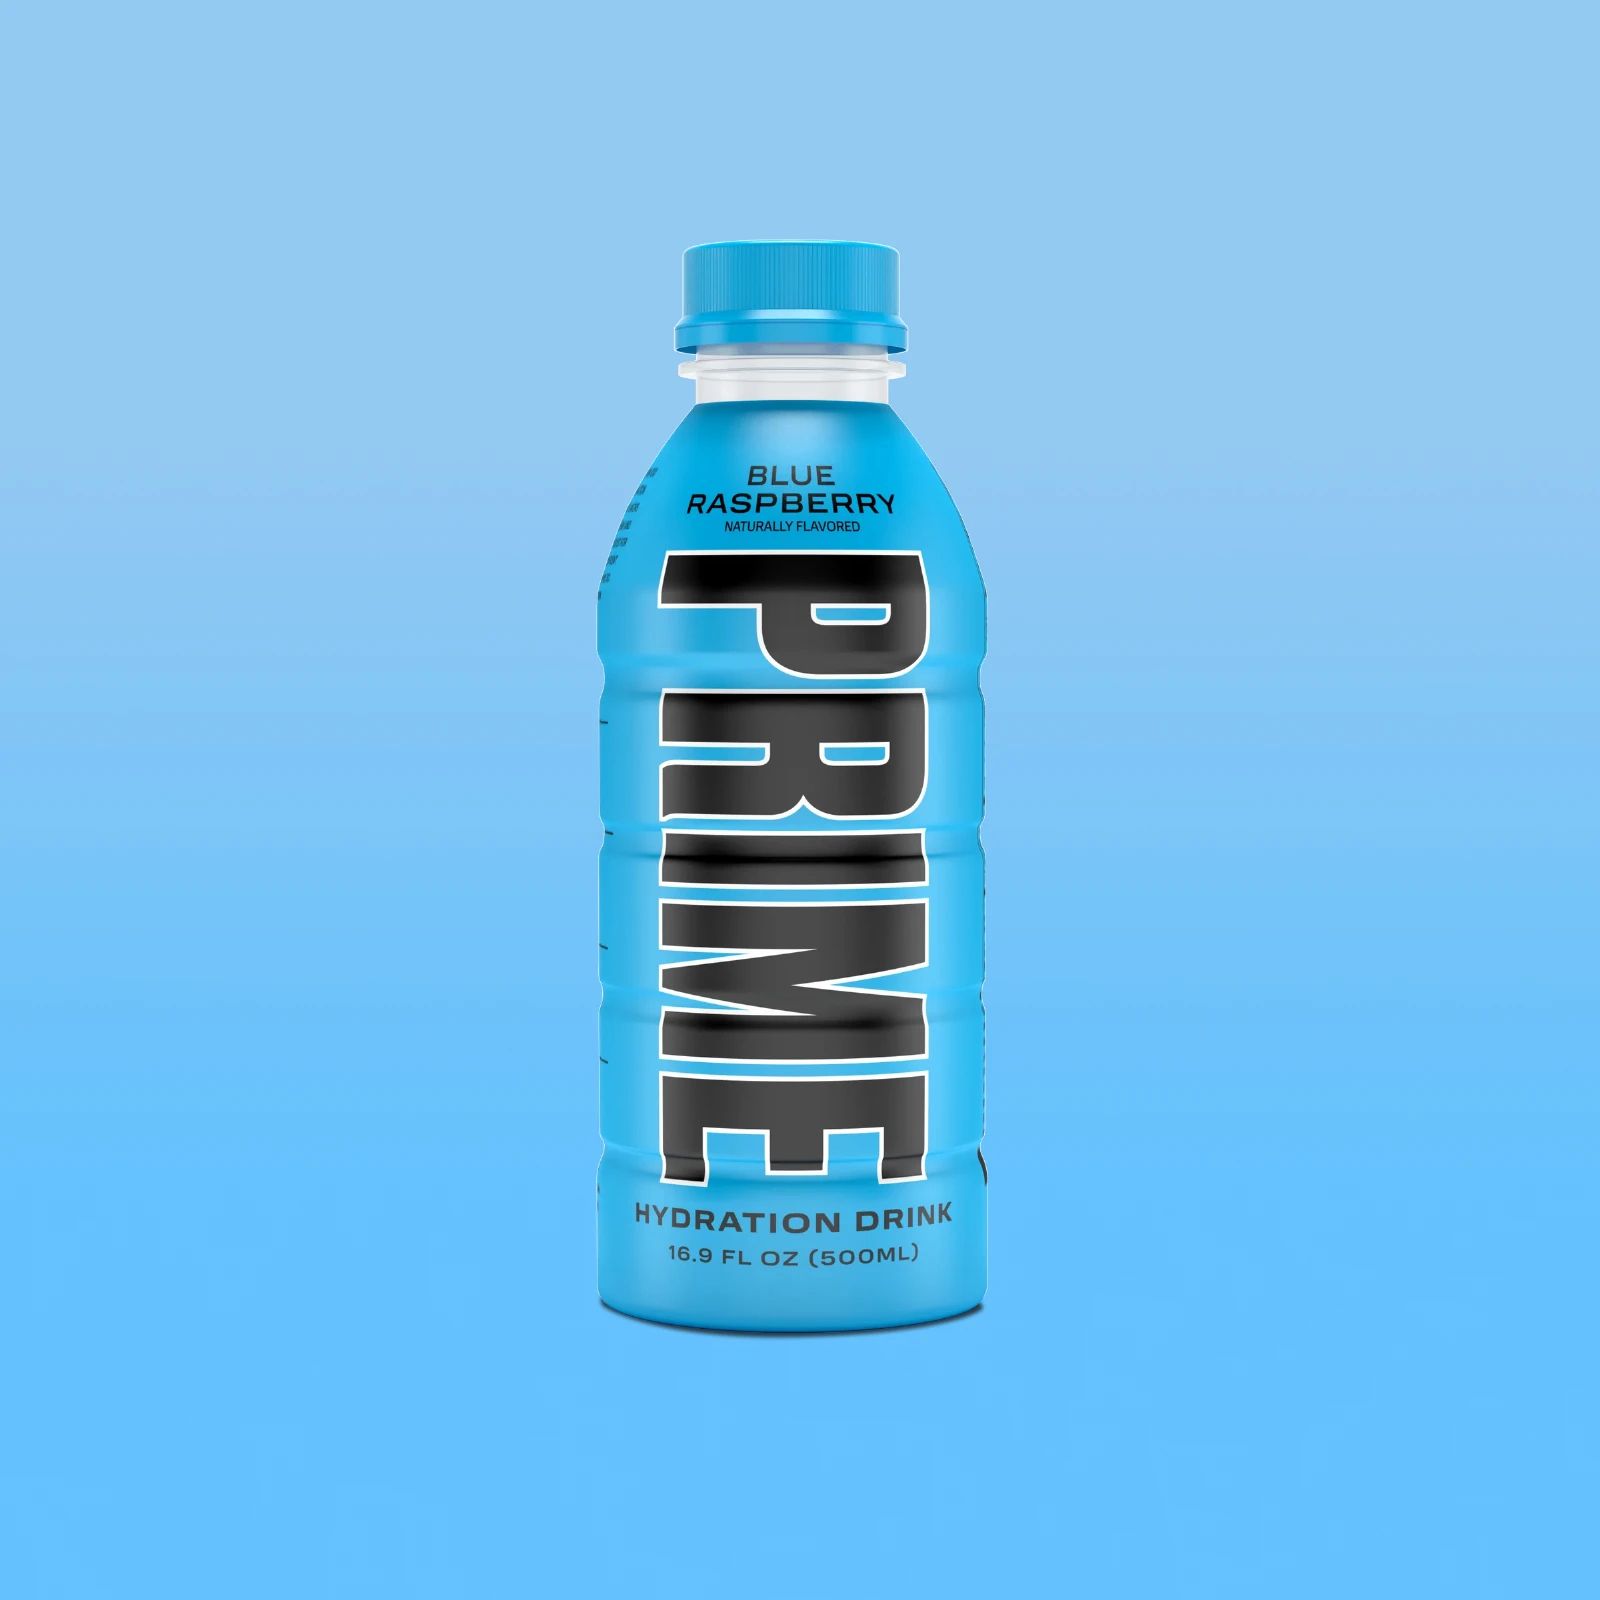 Prime Hydration - Sportdrink - Blue Raspberry - 500 ml - Energy Drink von Logan Paul und KSI - Aus den USA 1